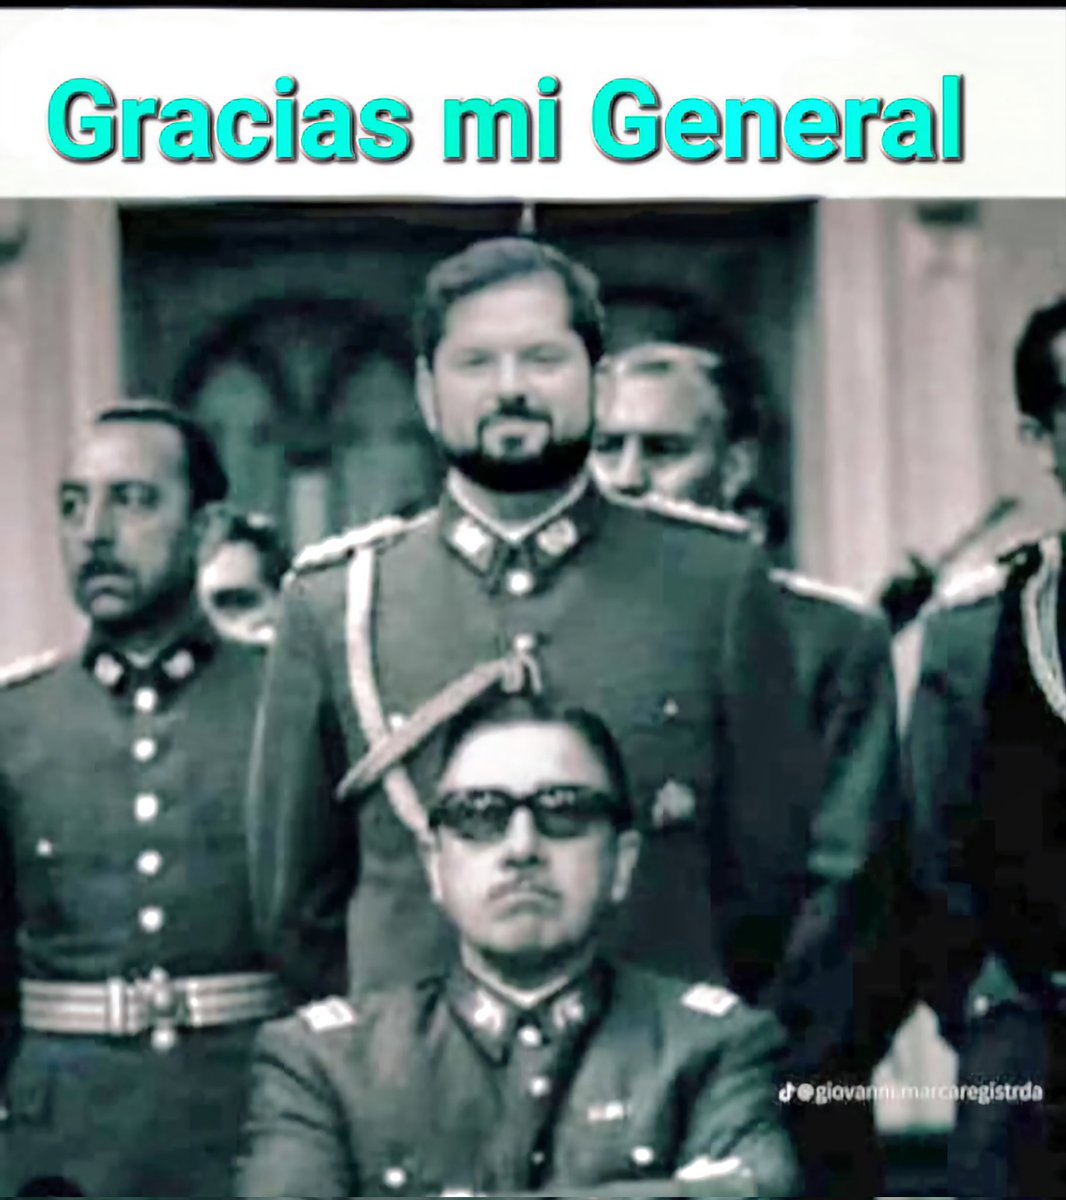 Celebra #Boric 
#Cagamos #Plebiscito 🇨🇱
#FelizSabado #EnContraCrece #AFavorYQueSeJodan 
Resultó que la constitución de #Pinochet era lo mejor 
Son todos 🤡🤡🤡🤡🤡🤡